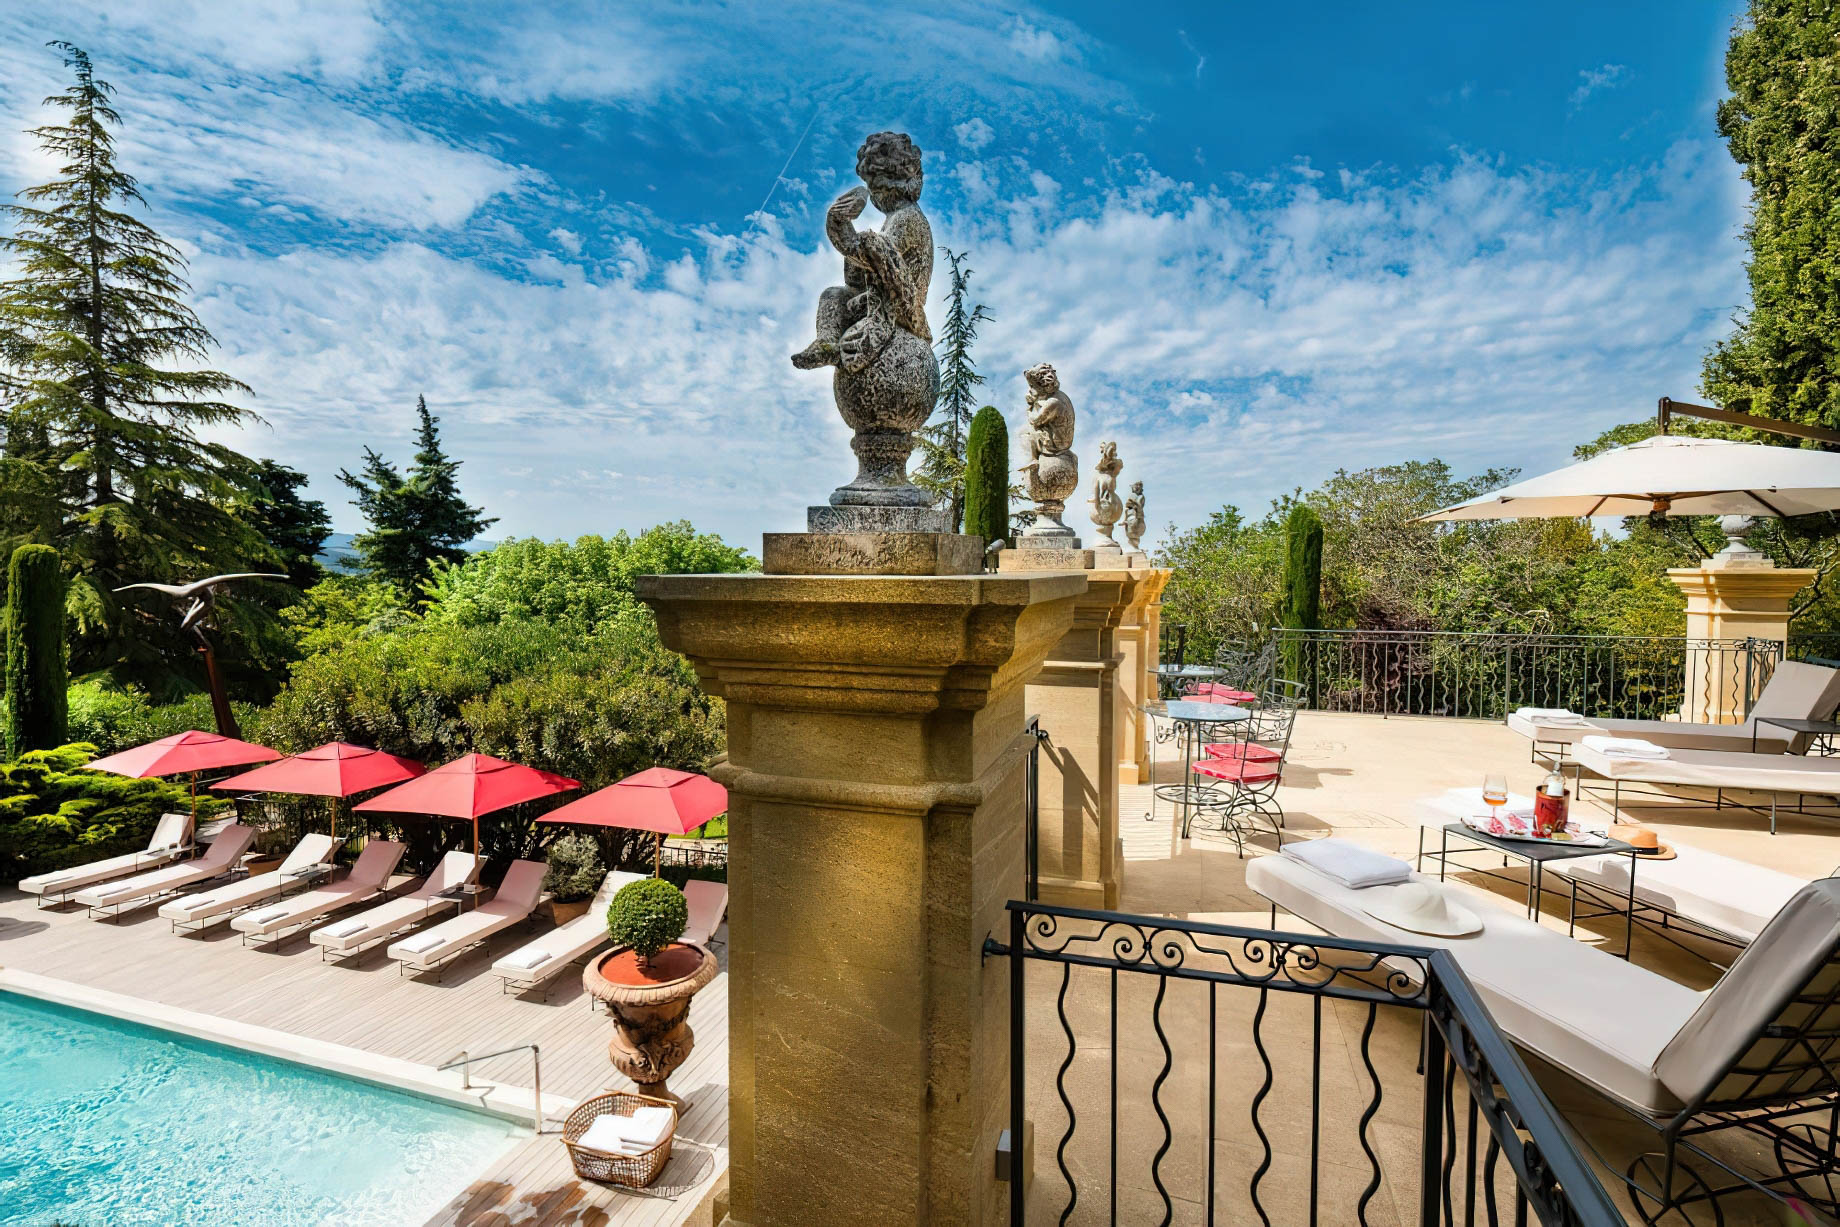 Villa Gallici Relais Châteaux Hotel – Aix-en-Provence, France – Pool Deck Terrace